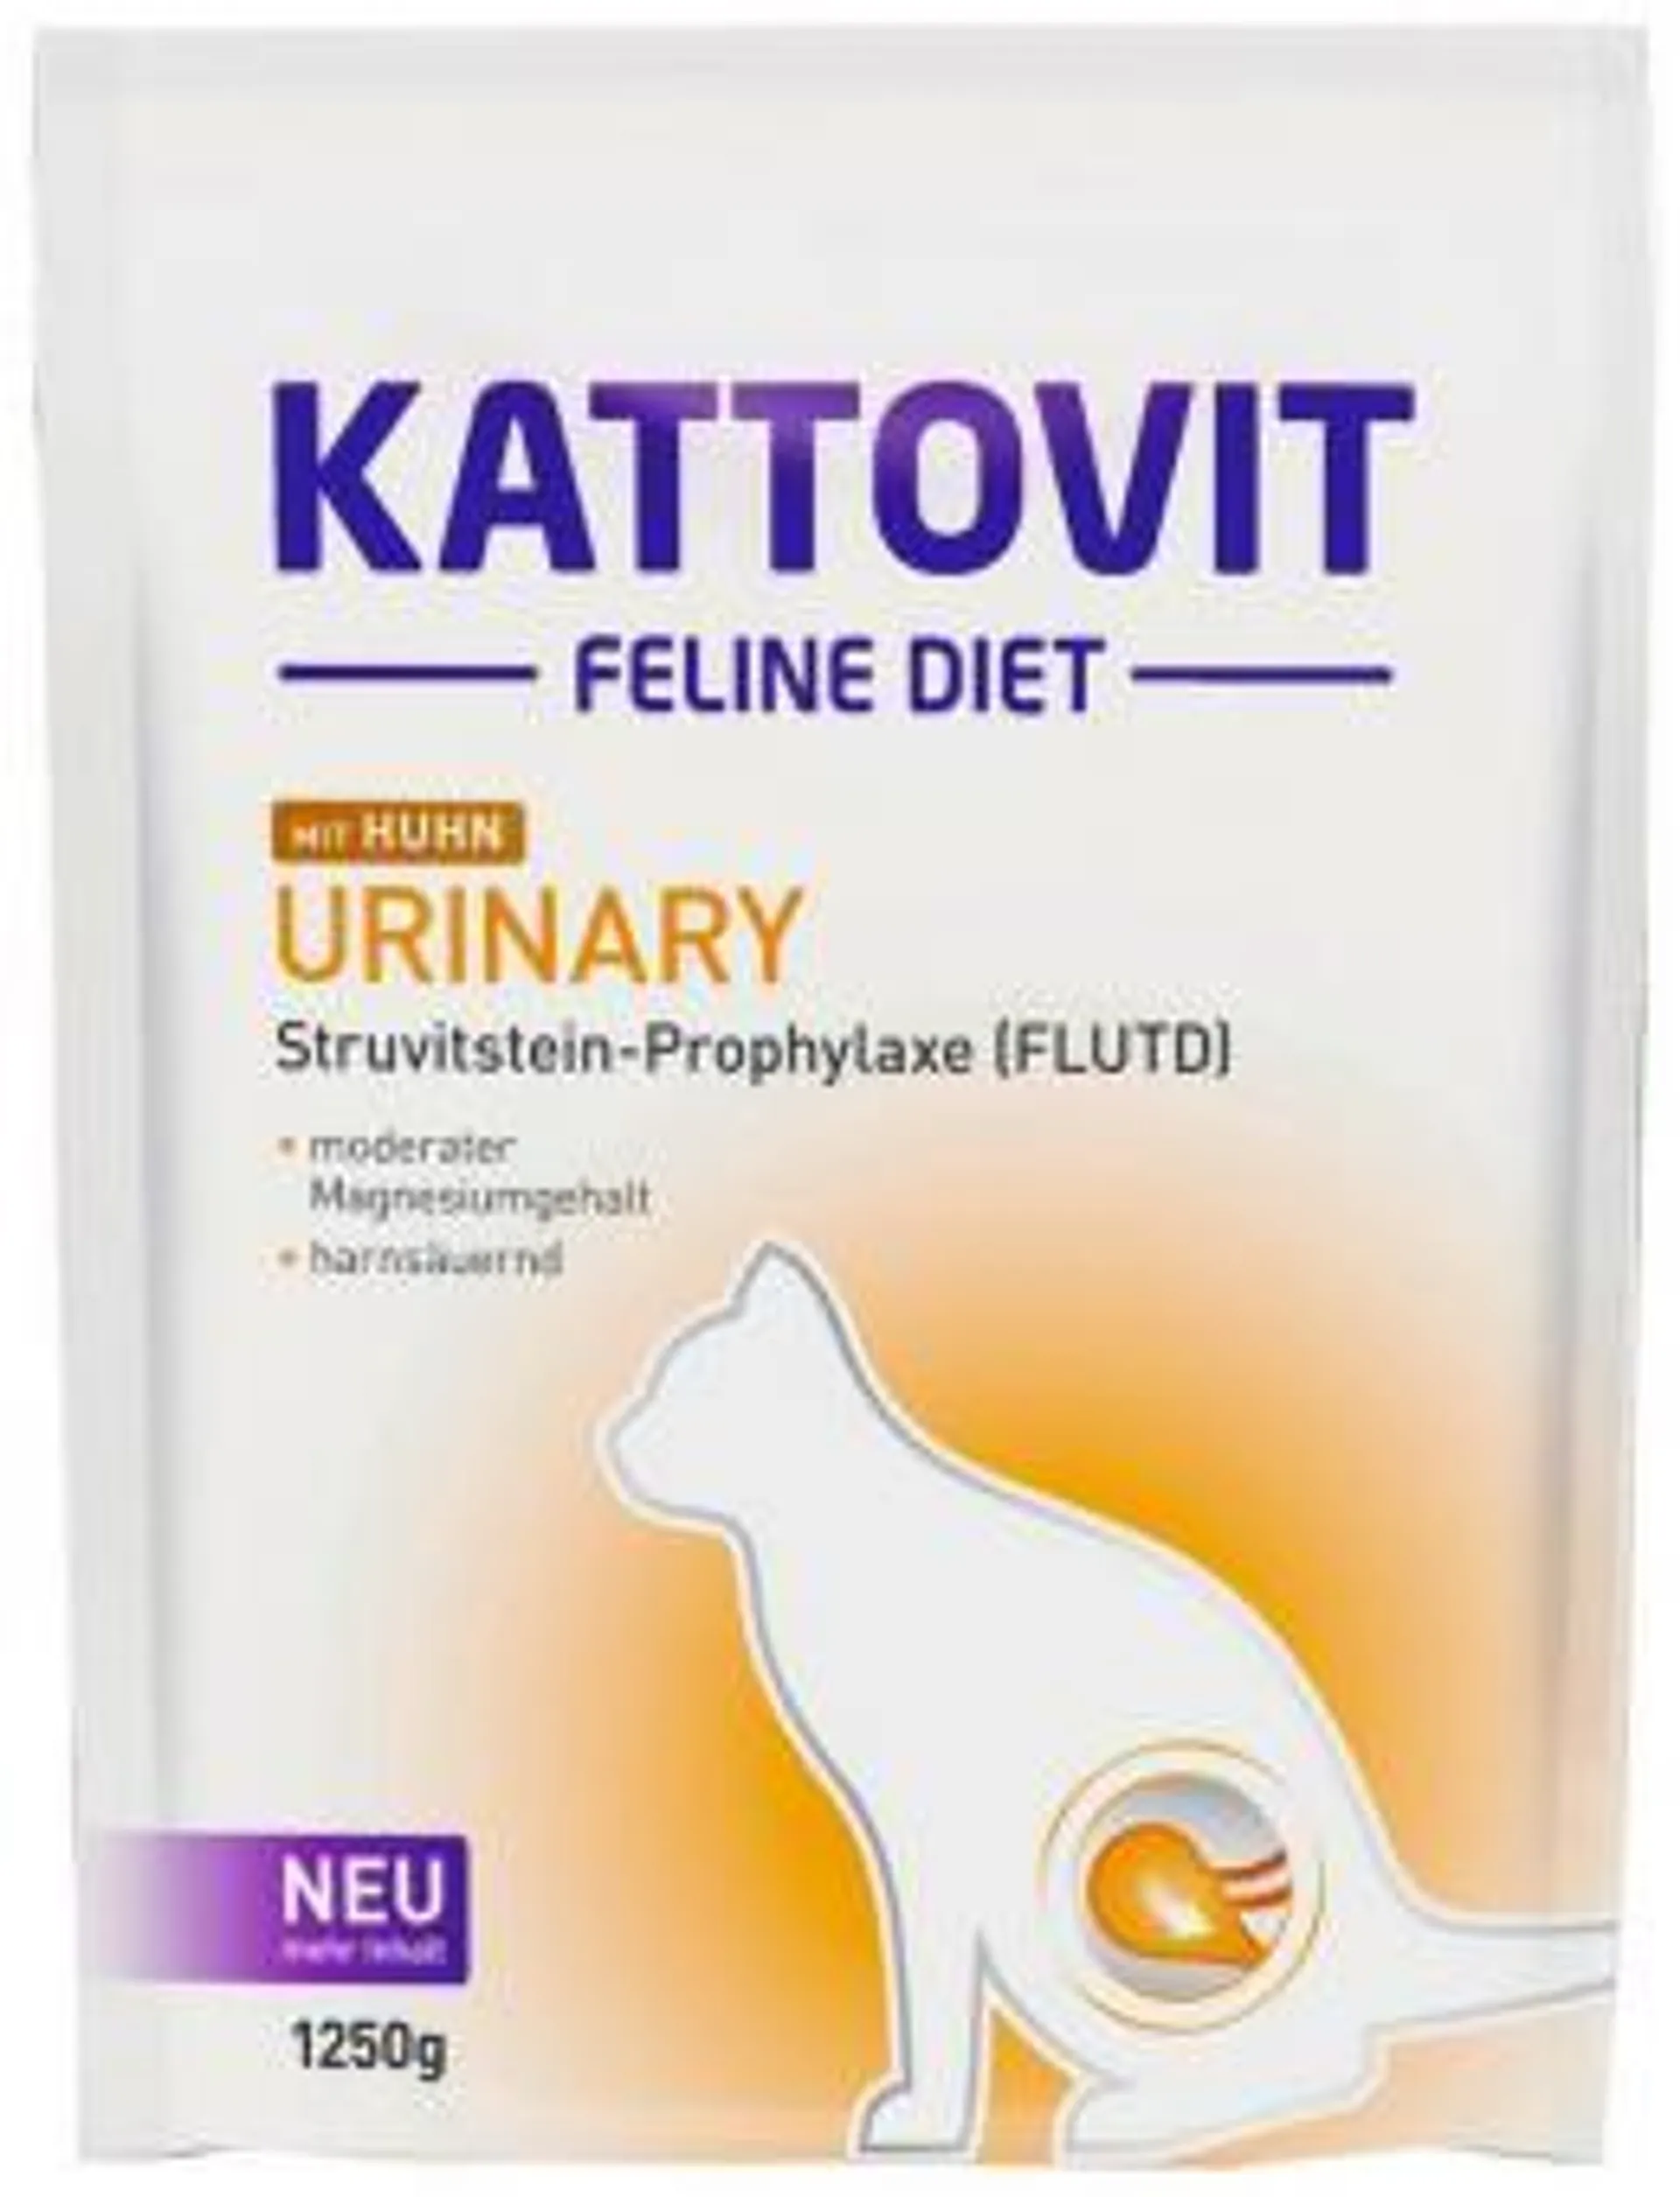 KATTOVIT Feline Diet 1,25kg Urinary mit Huhn